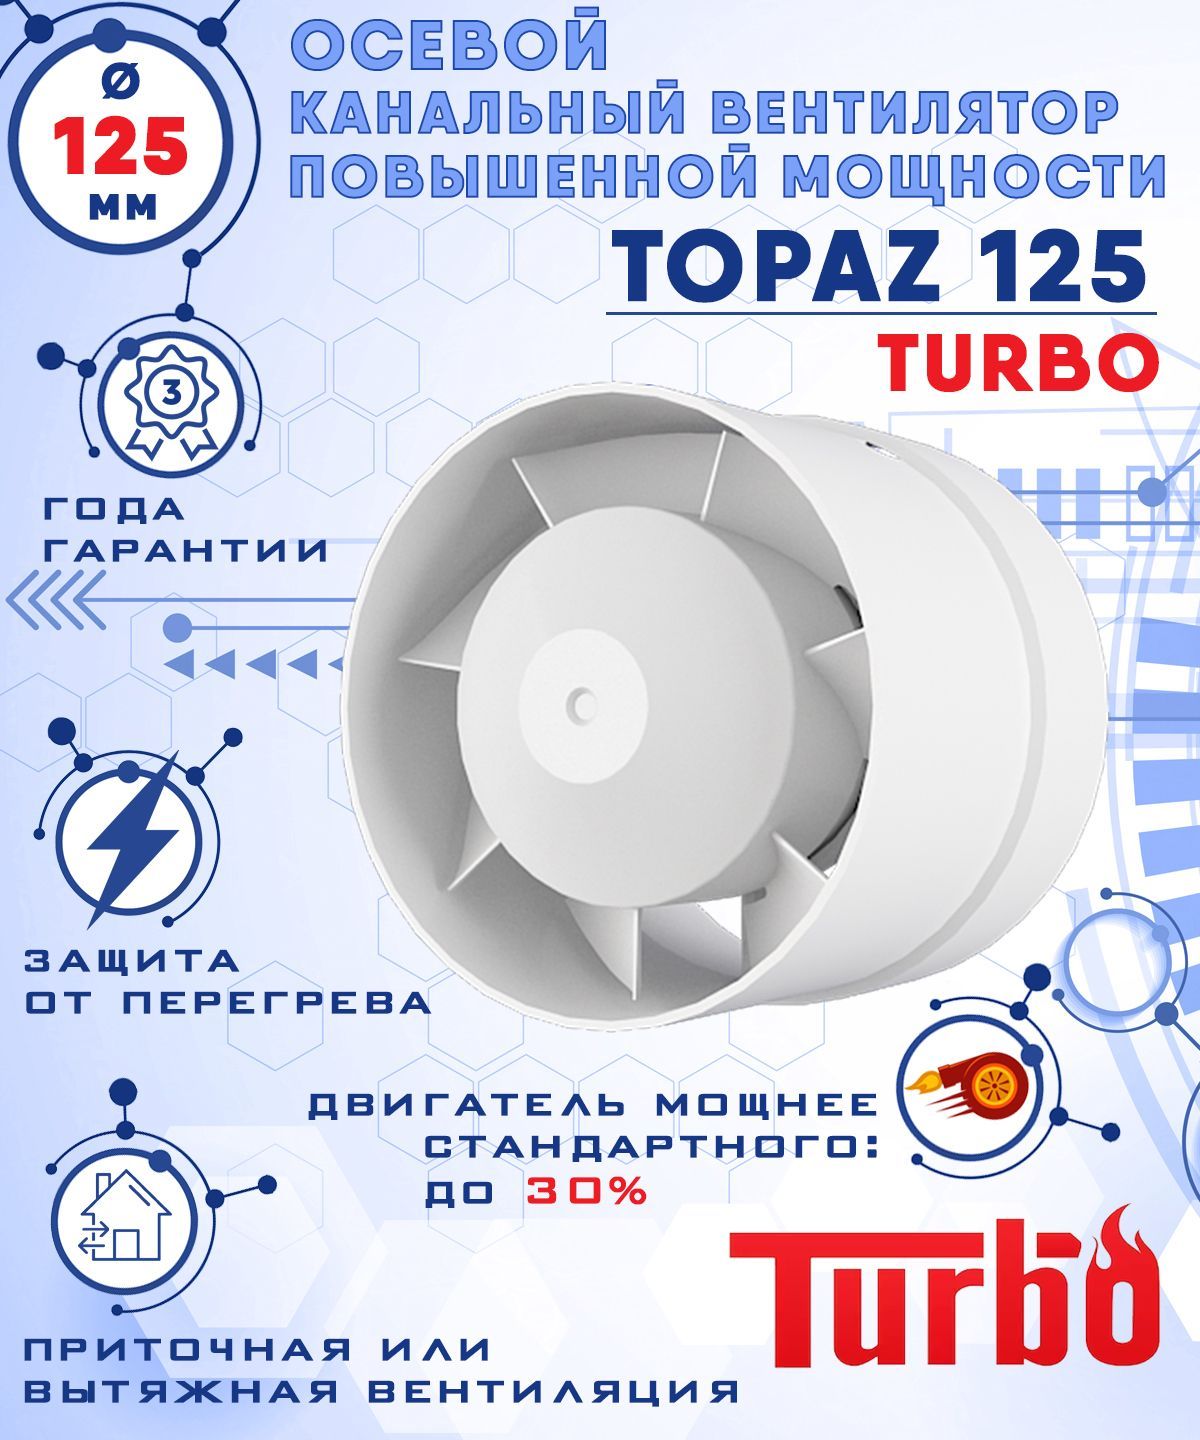 TOPAZ 125 TURBO осевой канальный диаметр 125 мм ZERNBERG